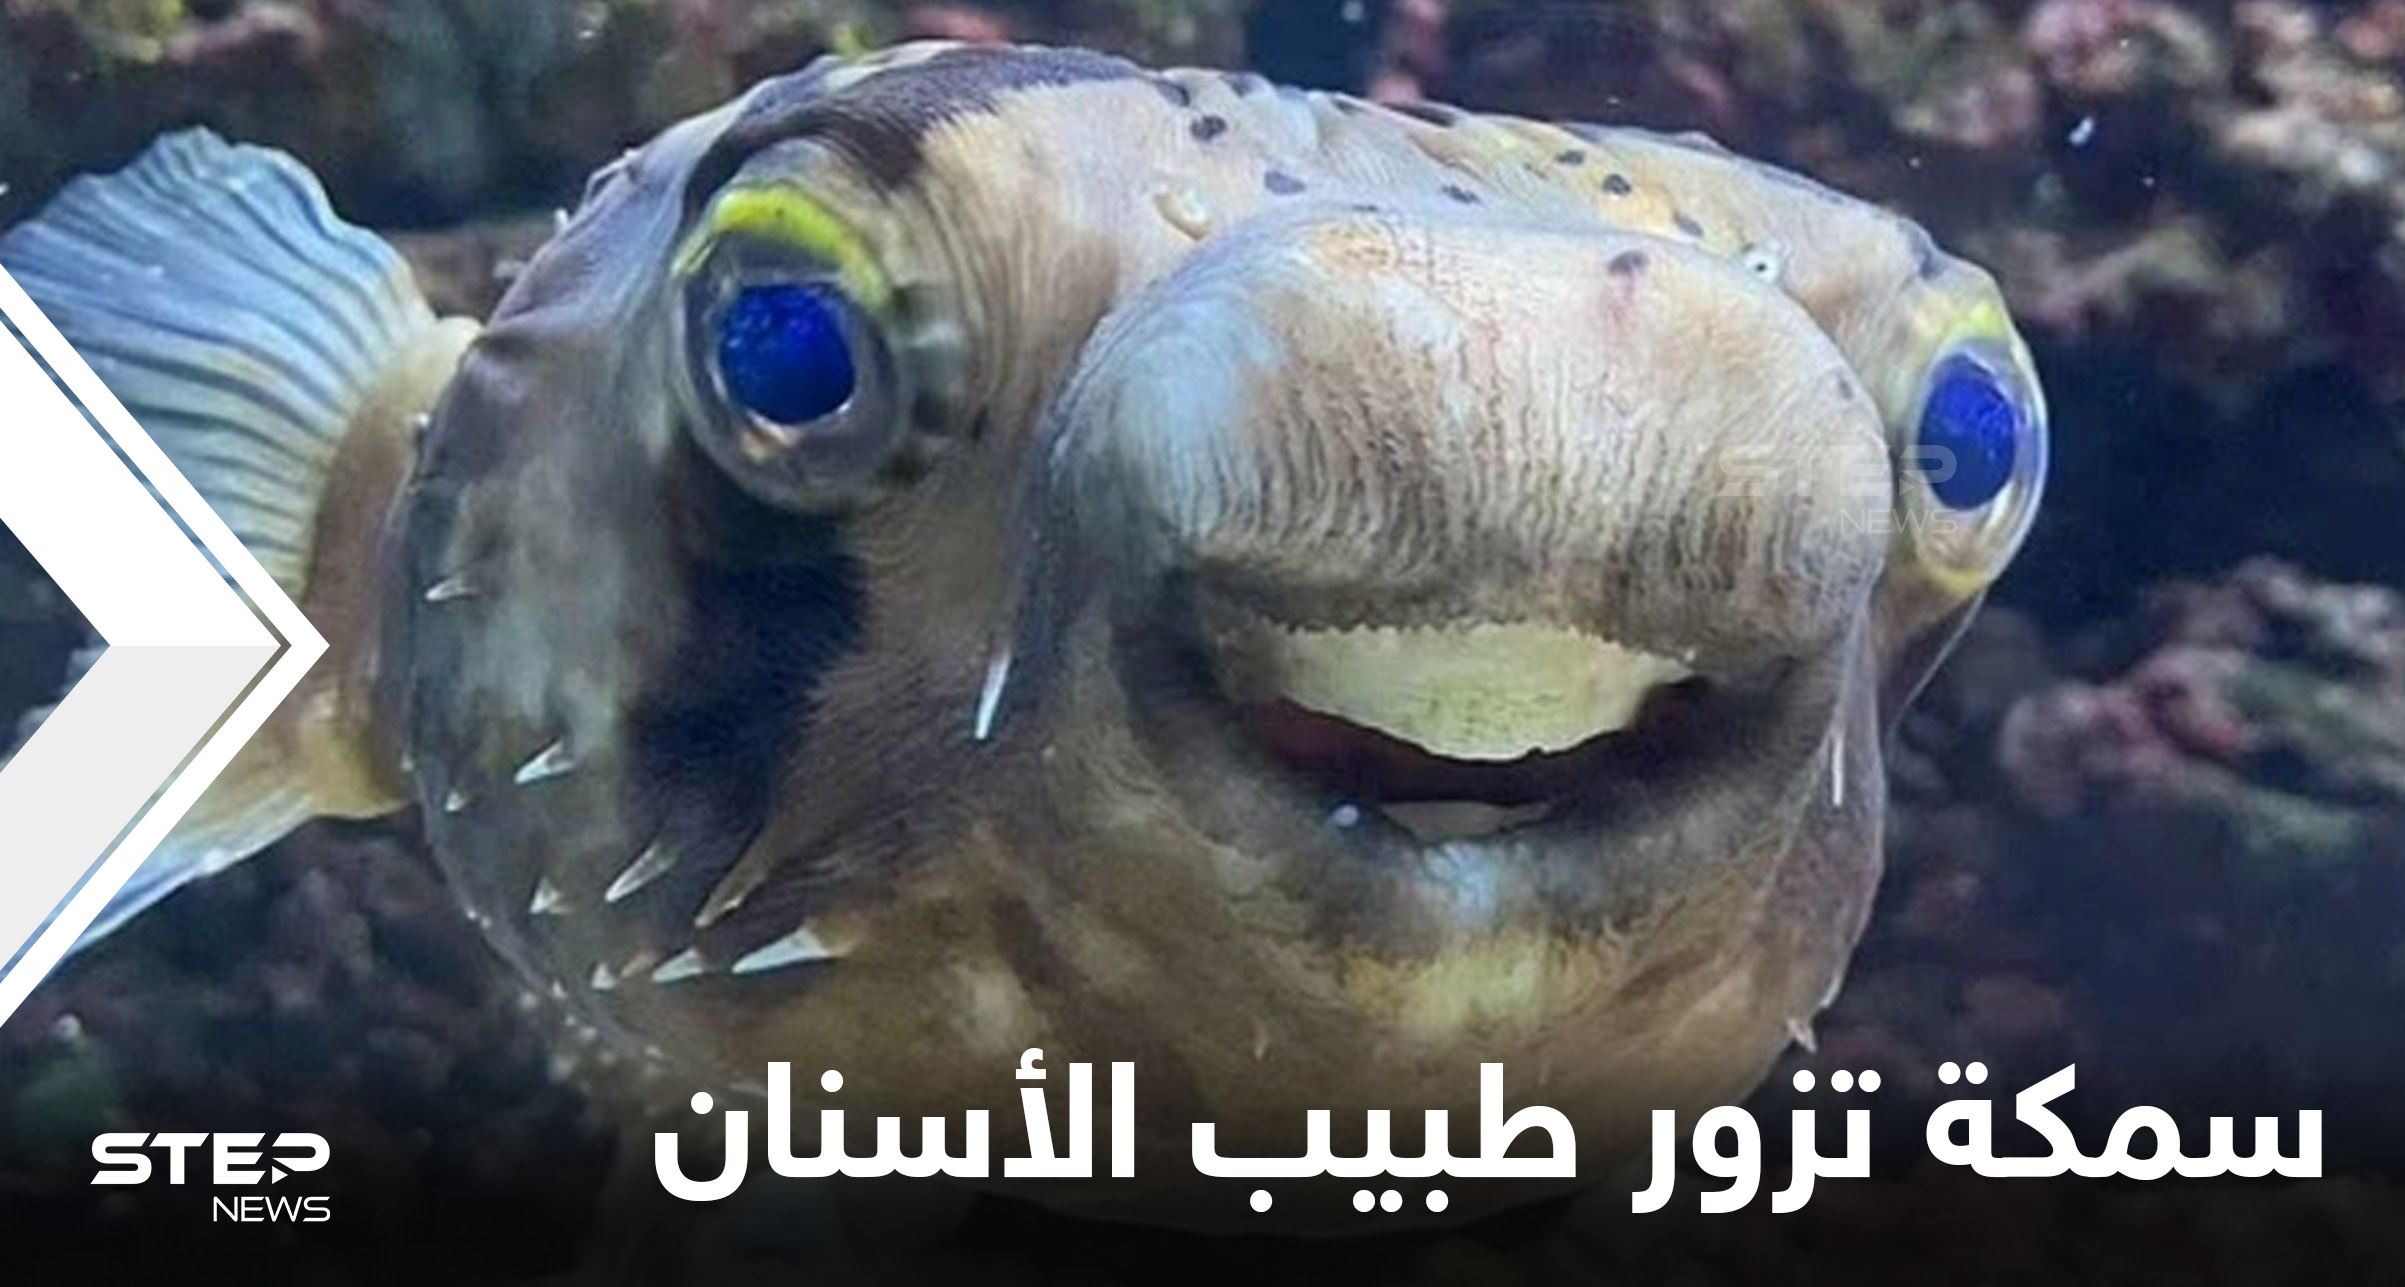 شاهد|| سمكة البخاخ تخضع لعملية برد أسنان بعد أن كبرت لدرجة حرمتها من الطعام